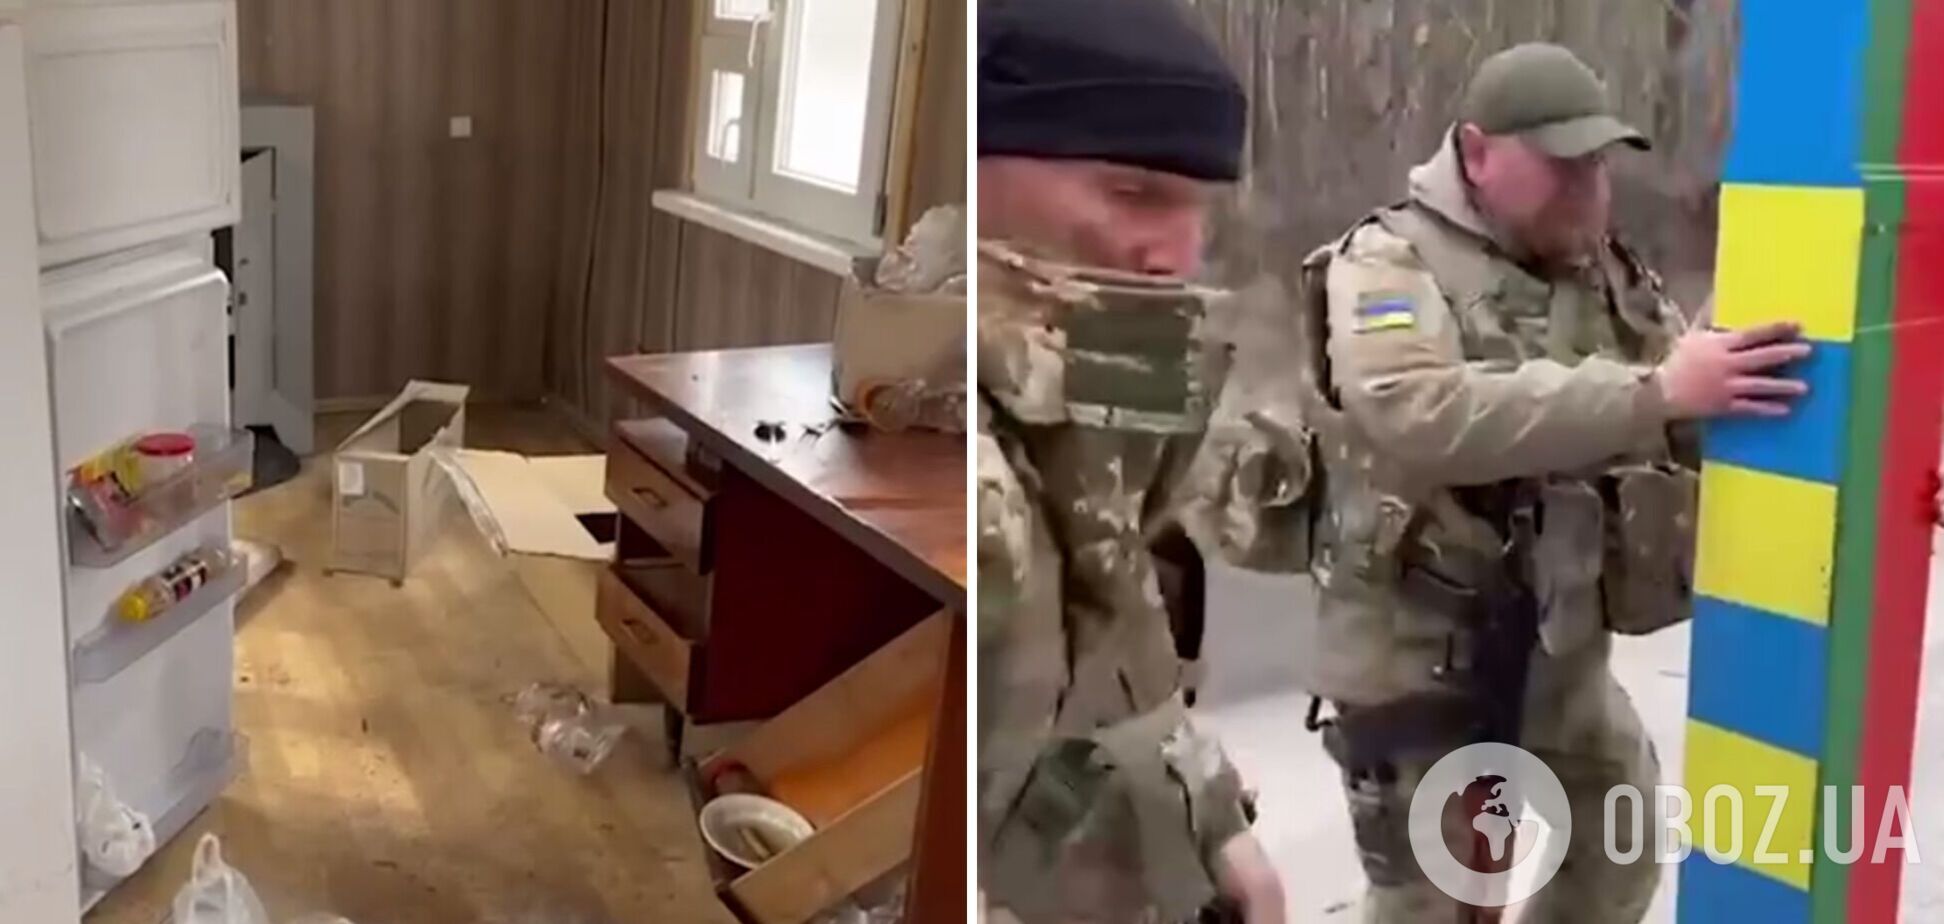 Войска РФ осквернили символику Беларуси на госгранице с Украиной. Видео